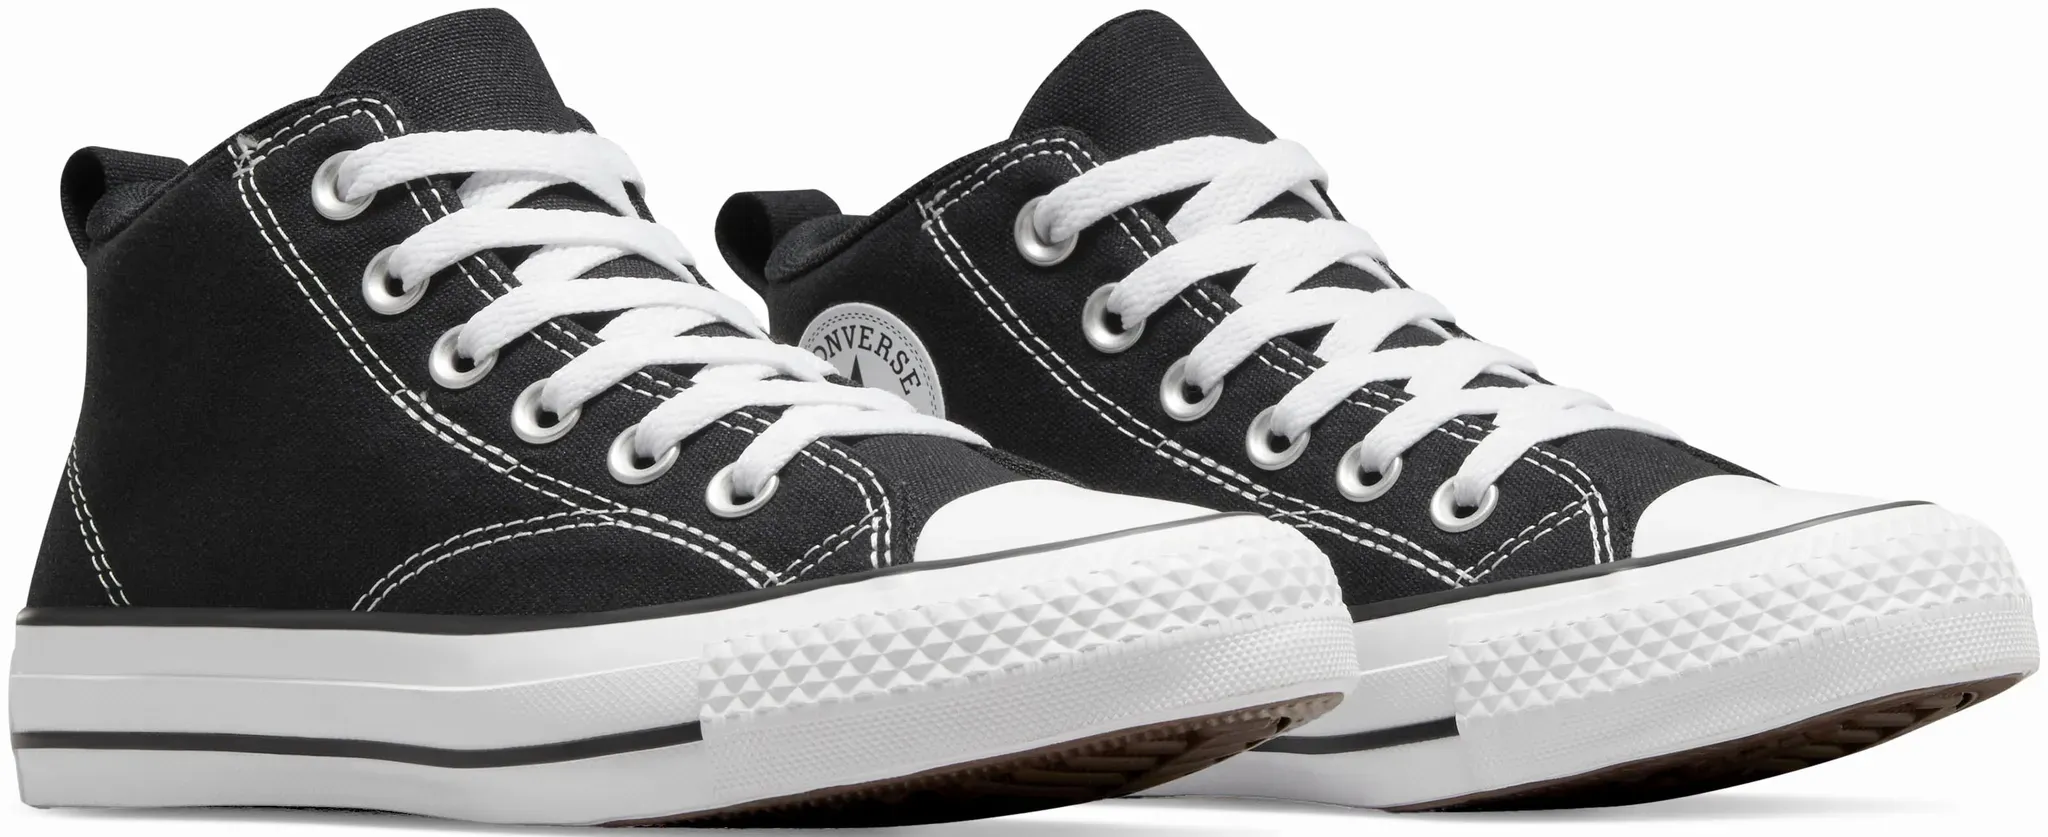 Sneaker CONVERSE "CHUCK TAYLOR ALL STAR MALDEN STREET" Gr. 39, schwarz (black) Schuhe Sneaker